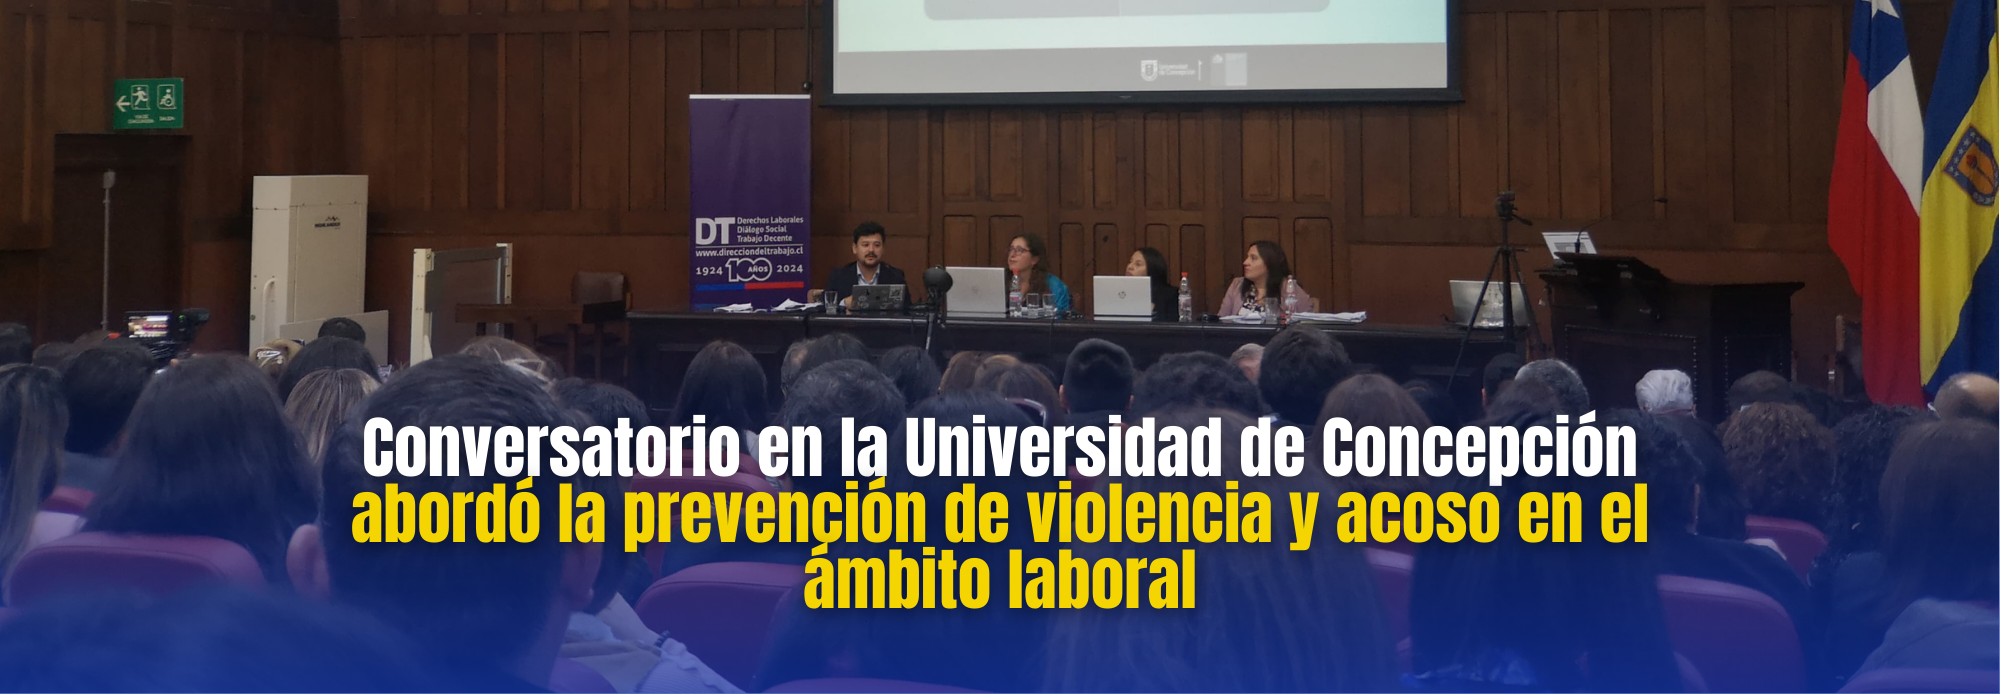 Conversatorio sobre prevención de violencia y acoso laboral